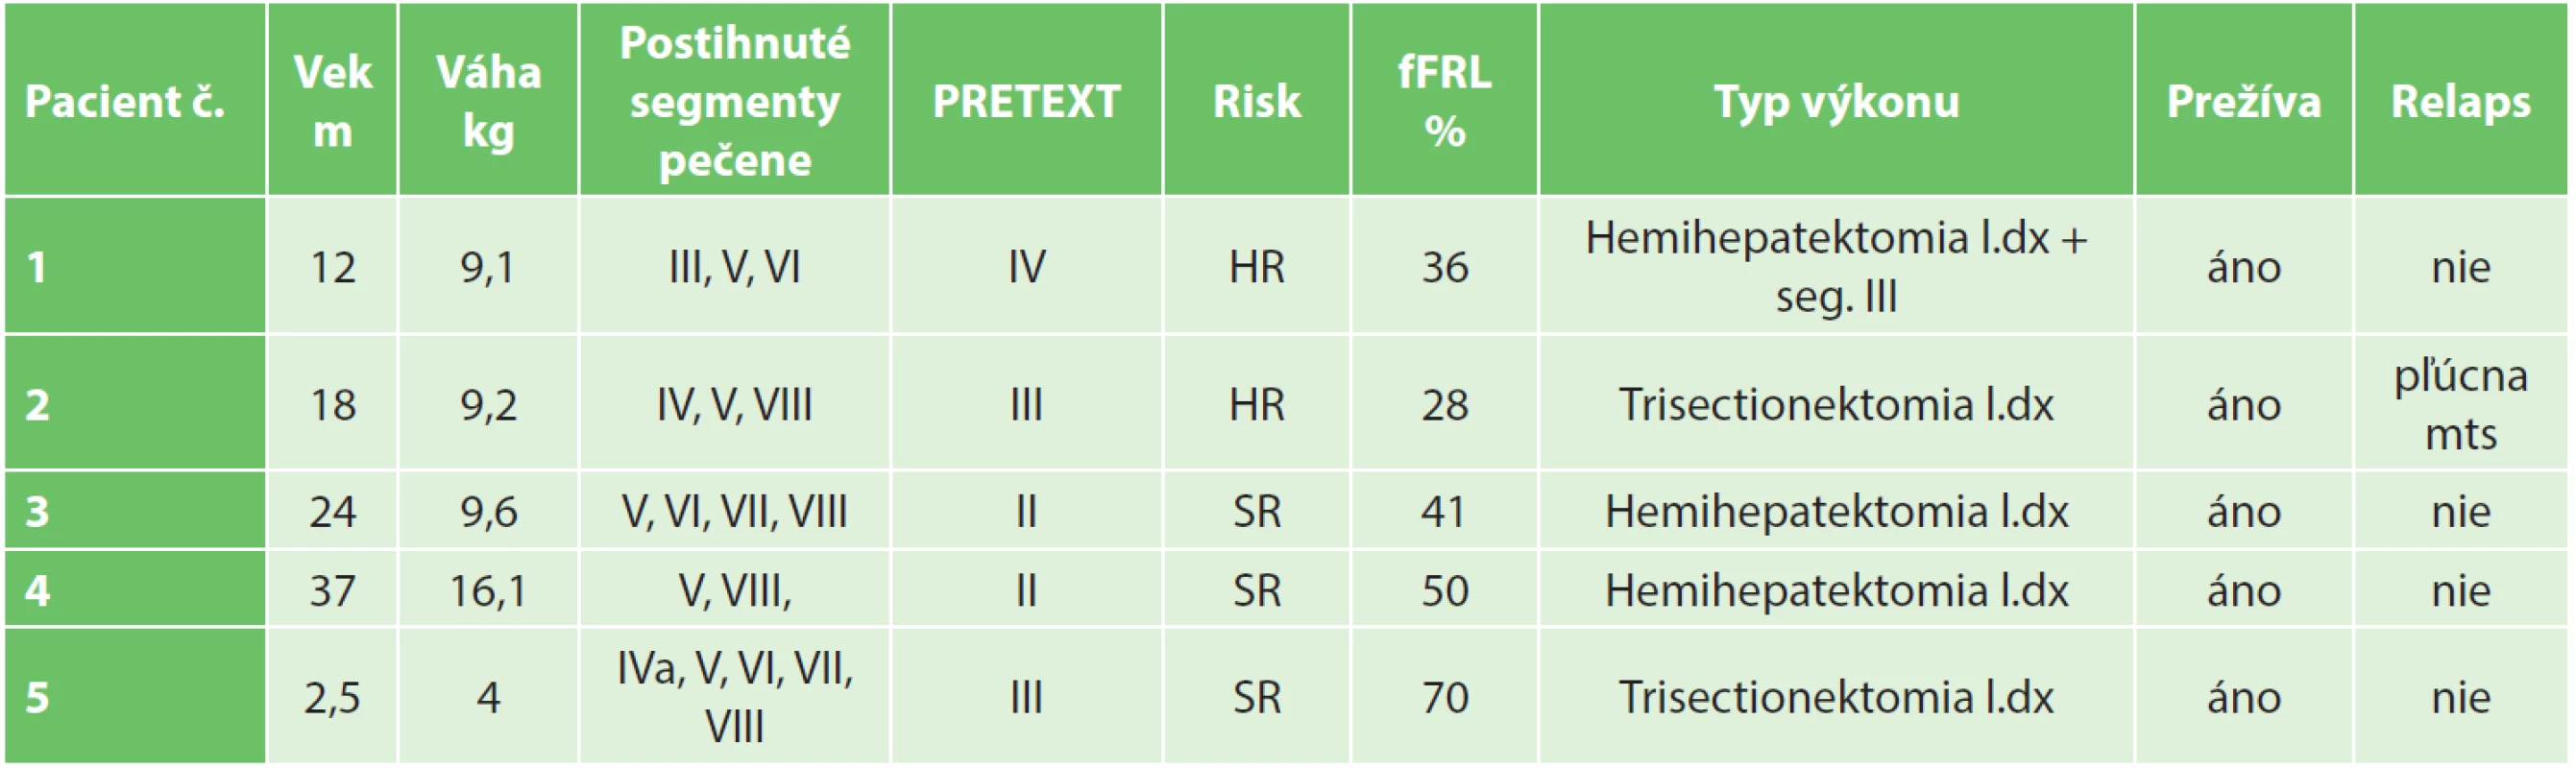 Súbor pacientov Janek/Kothaj 2012-2016 ( fFRL – funkčný postresekčný zvyšok, m- mesiace, HR – vysoké riziko, SR – štandardné riziko)
Tab. 2: Patients characteristics Janek/Kothaj 2012−2016 (fFRL – functionally future remnant liver, m – months, HR – high risk, SR – standard risk)